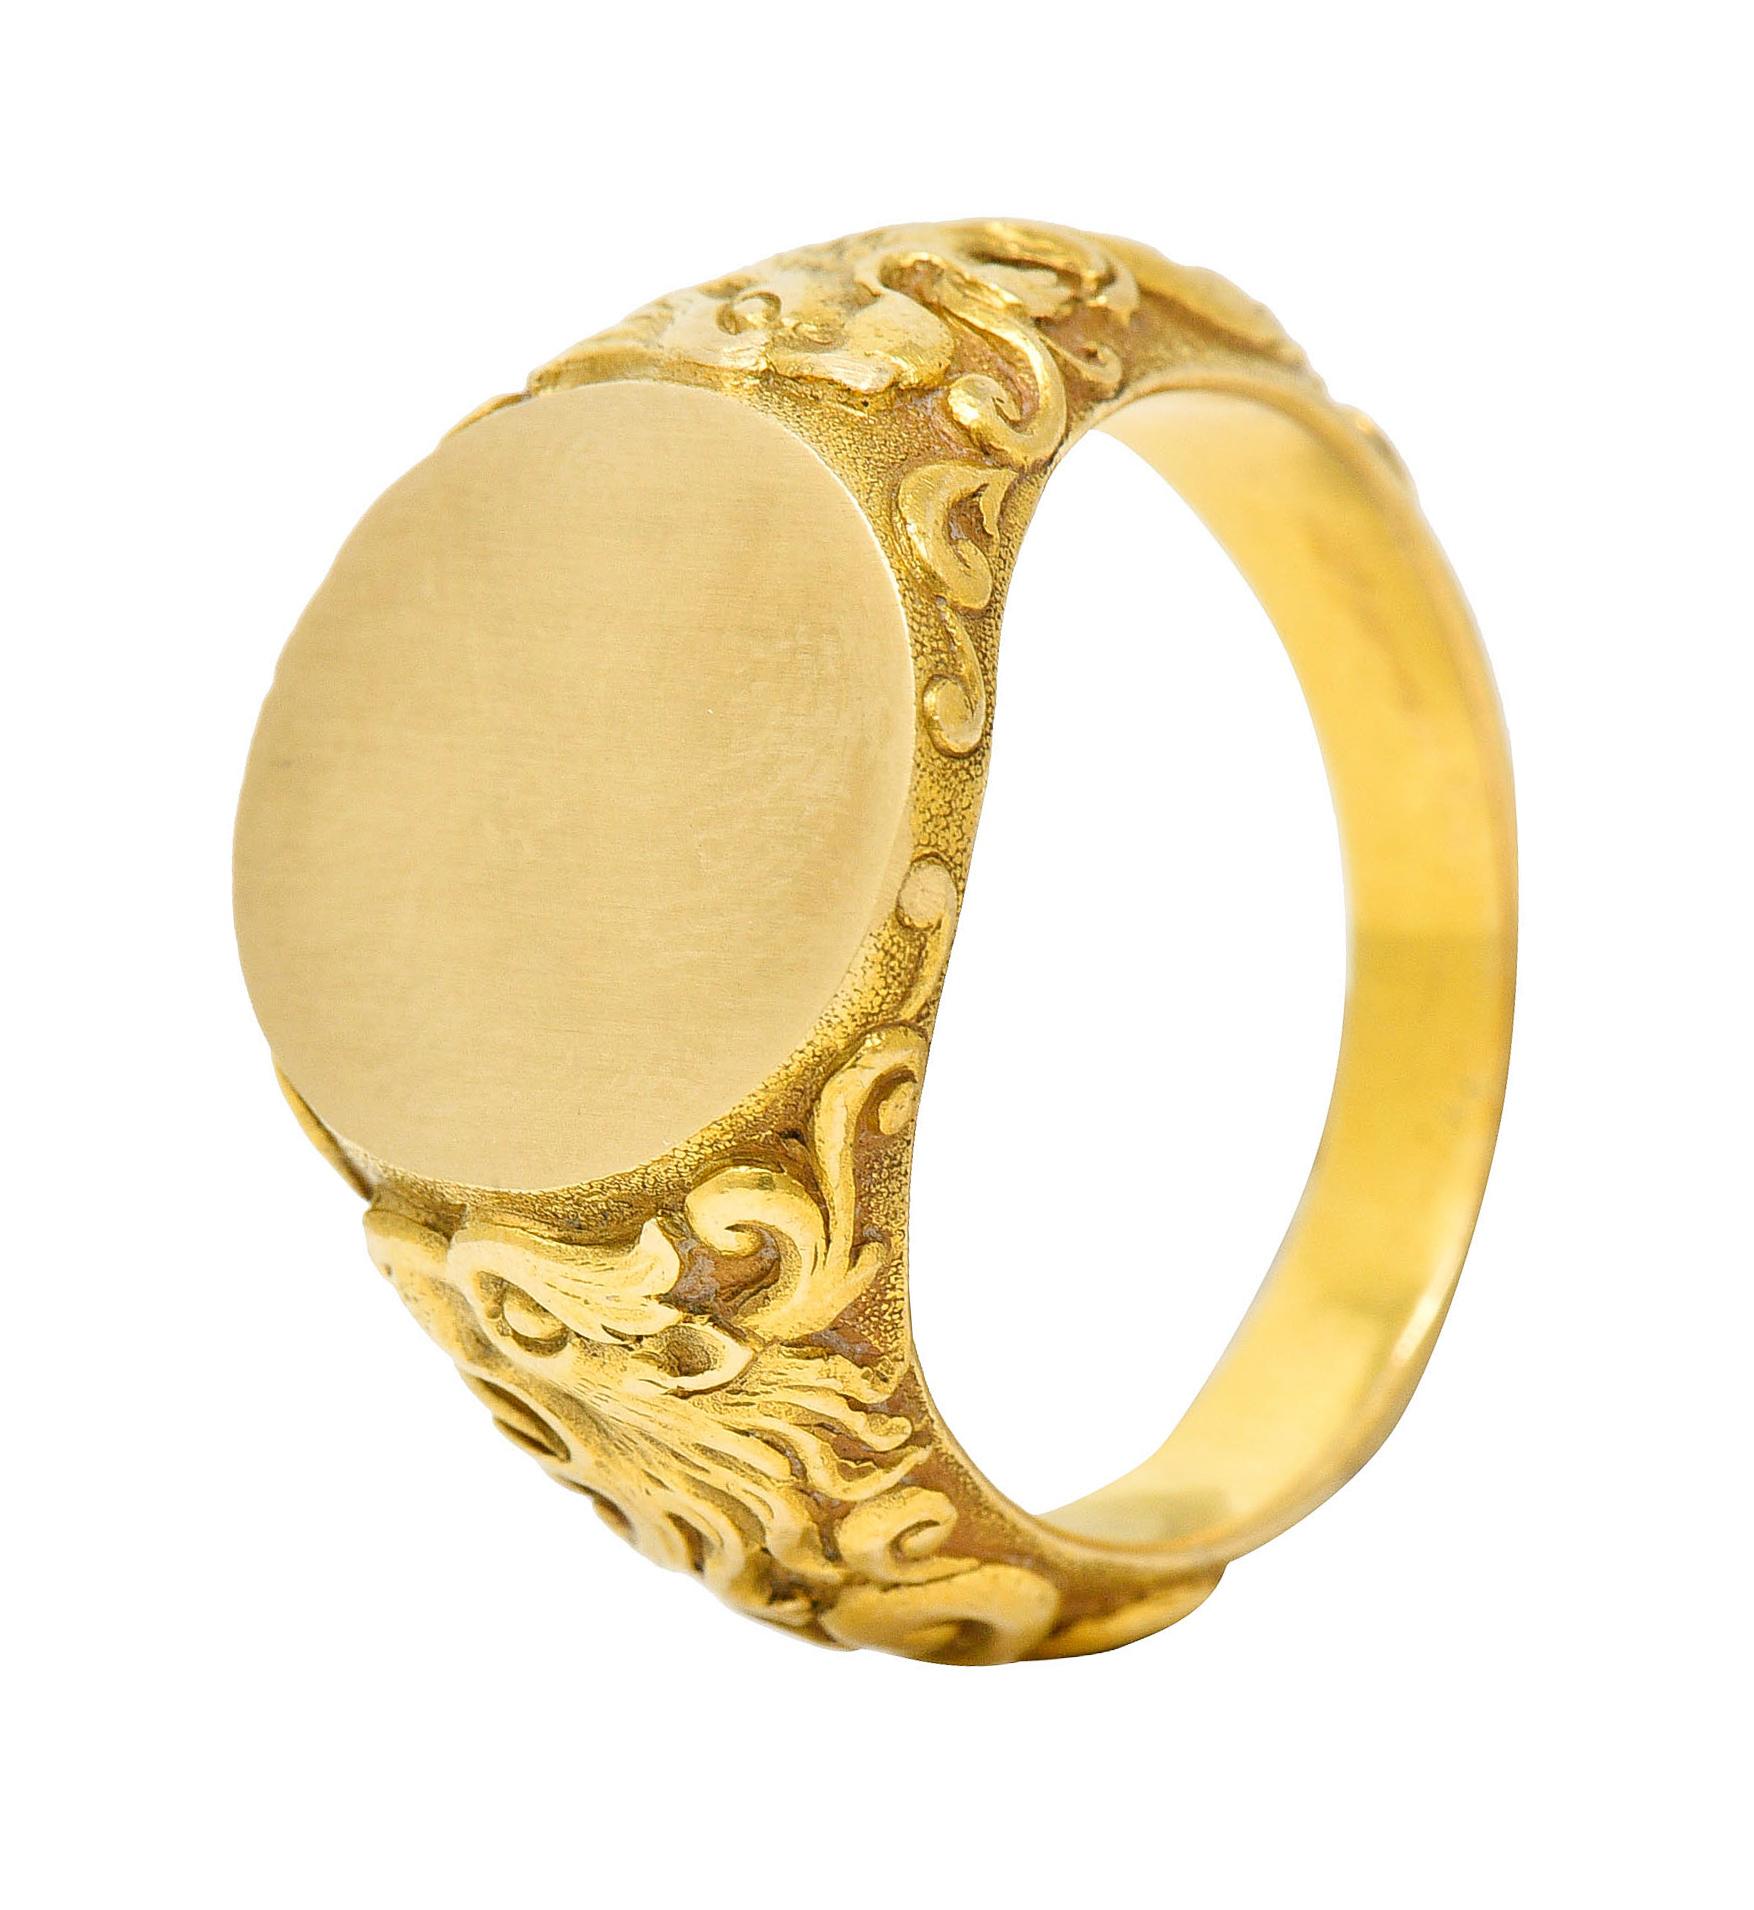 Tiffany & Co. Art Nouveau 18 Karat Gold Unisex Lion Signet Ring 8